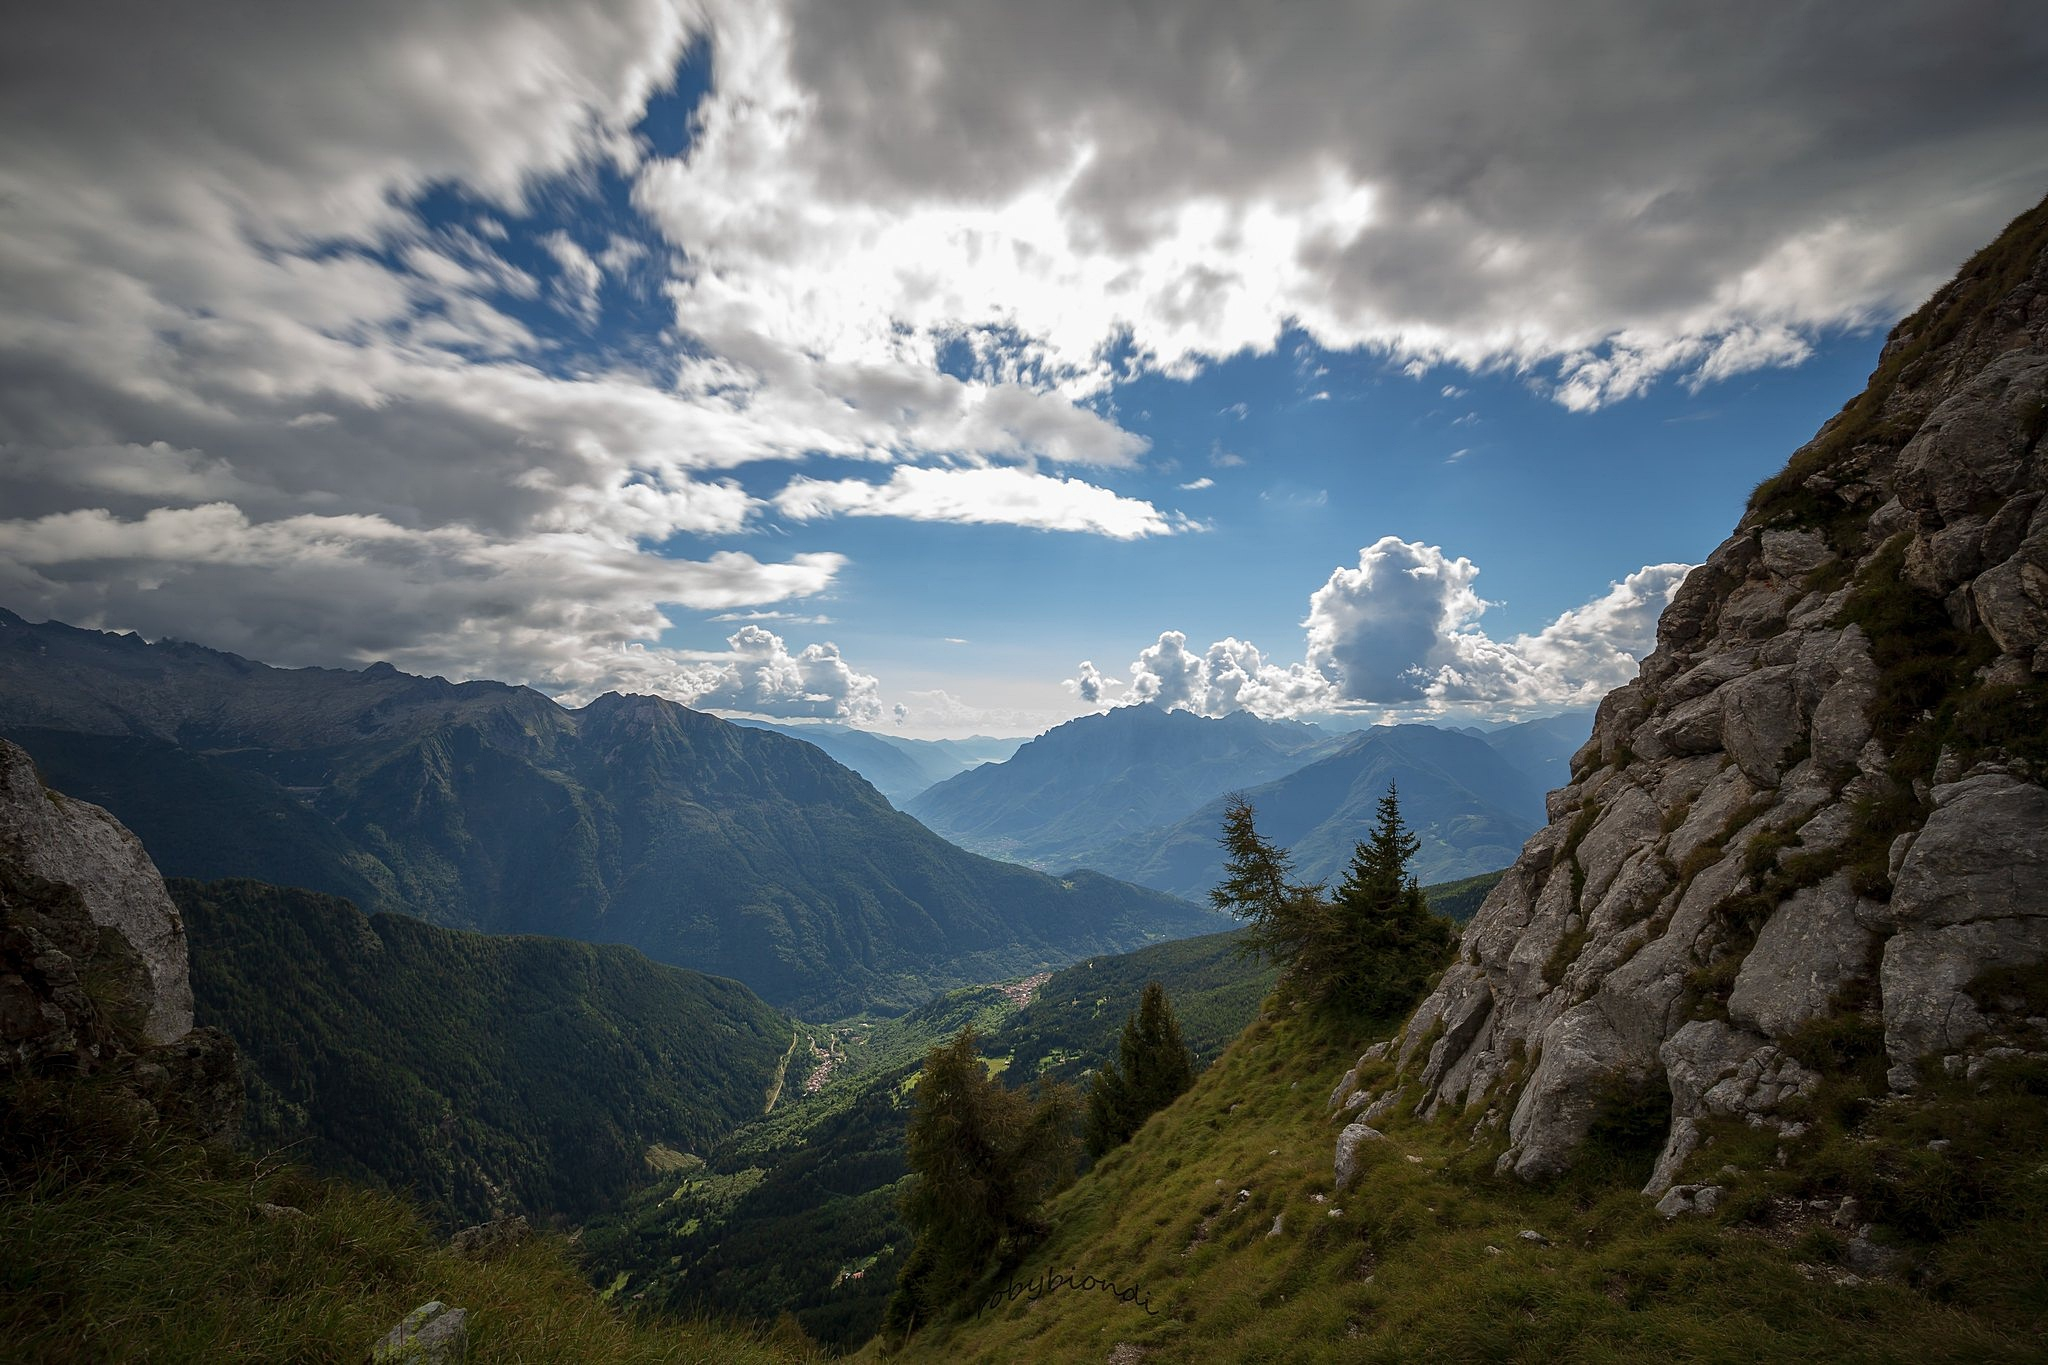 Фото Италия, пейзаж, облака, горы, долина, обои val camonica, пейзажи - бесплатные картинки на Fonwall